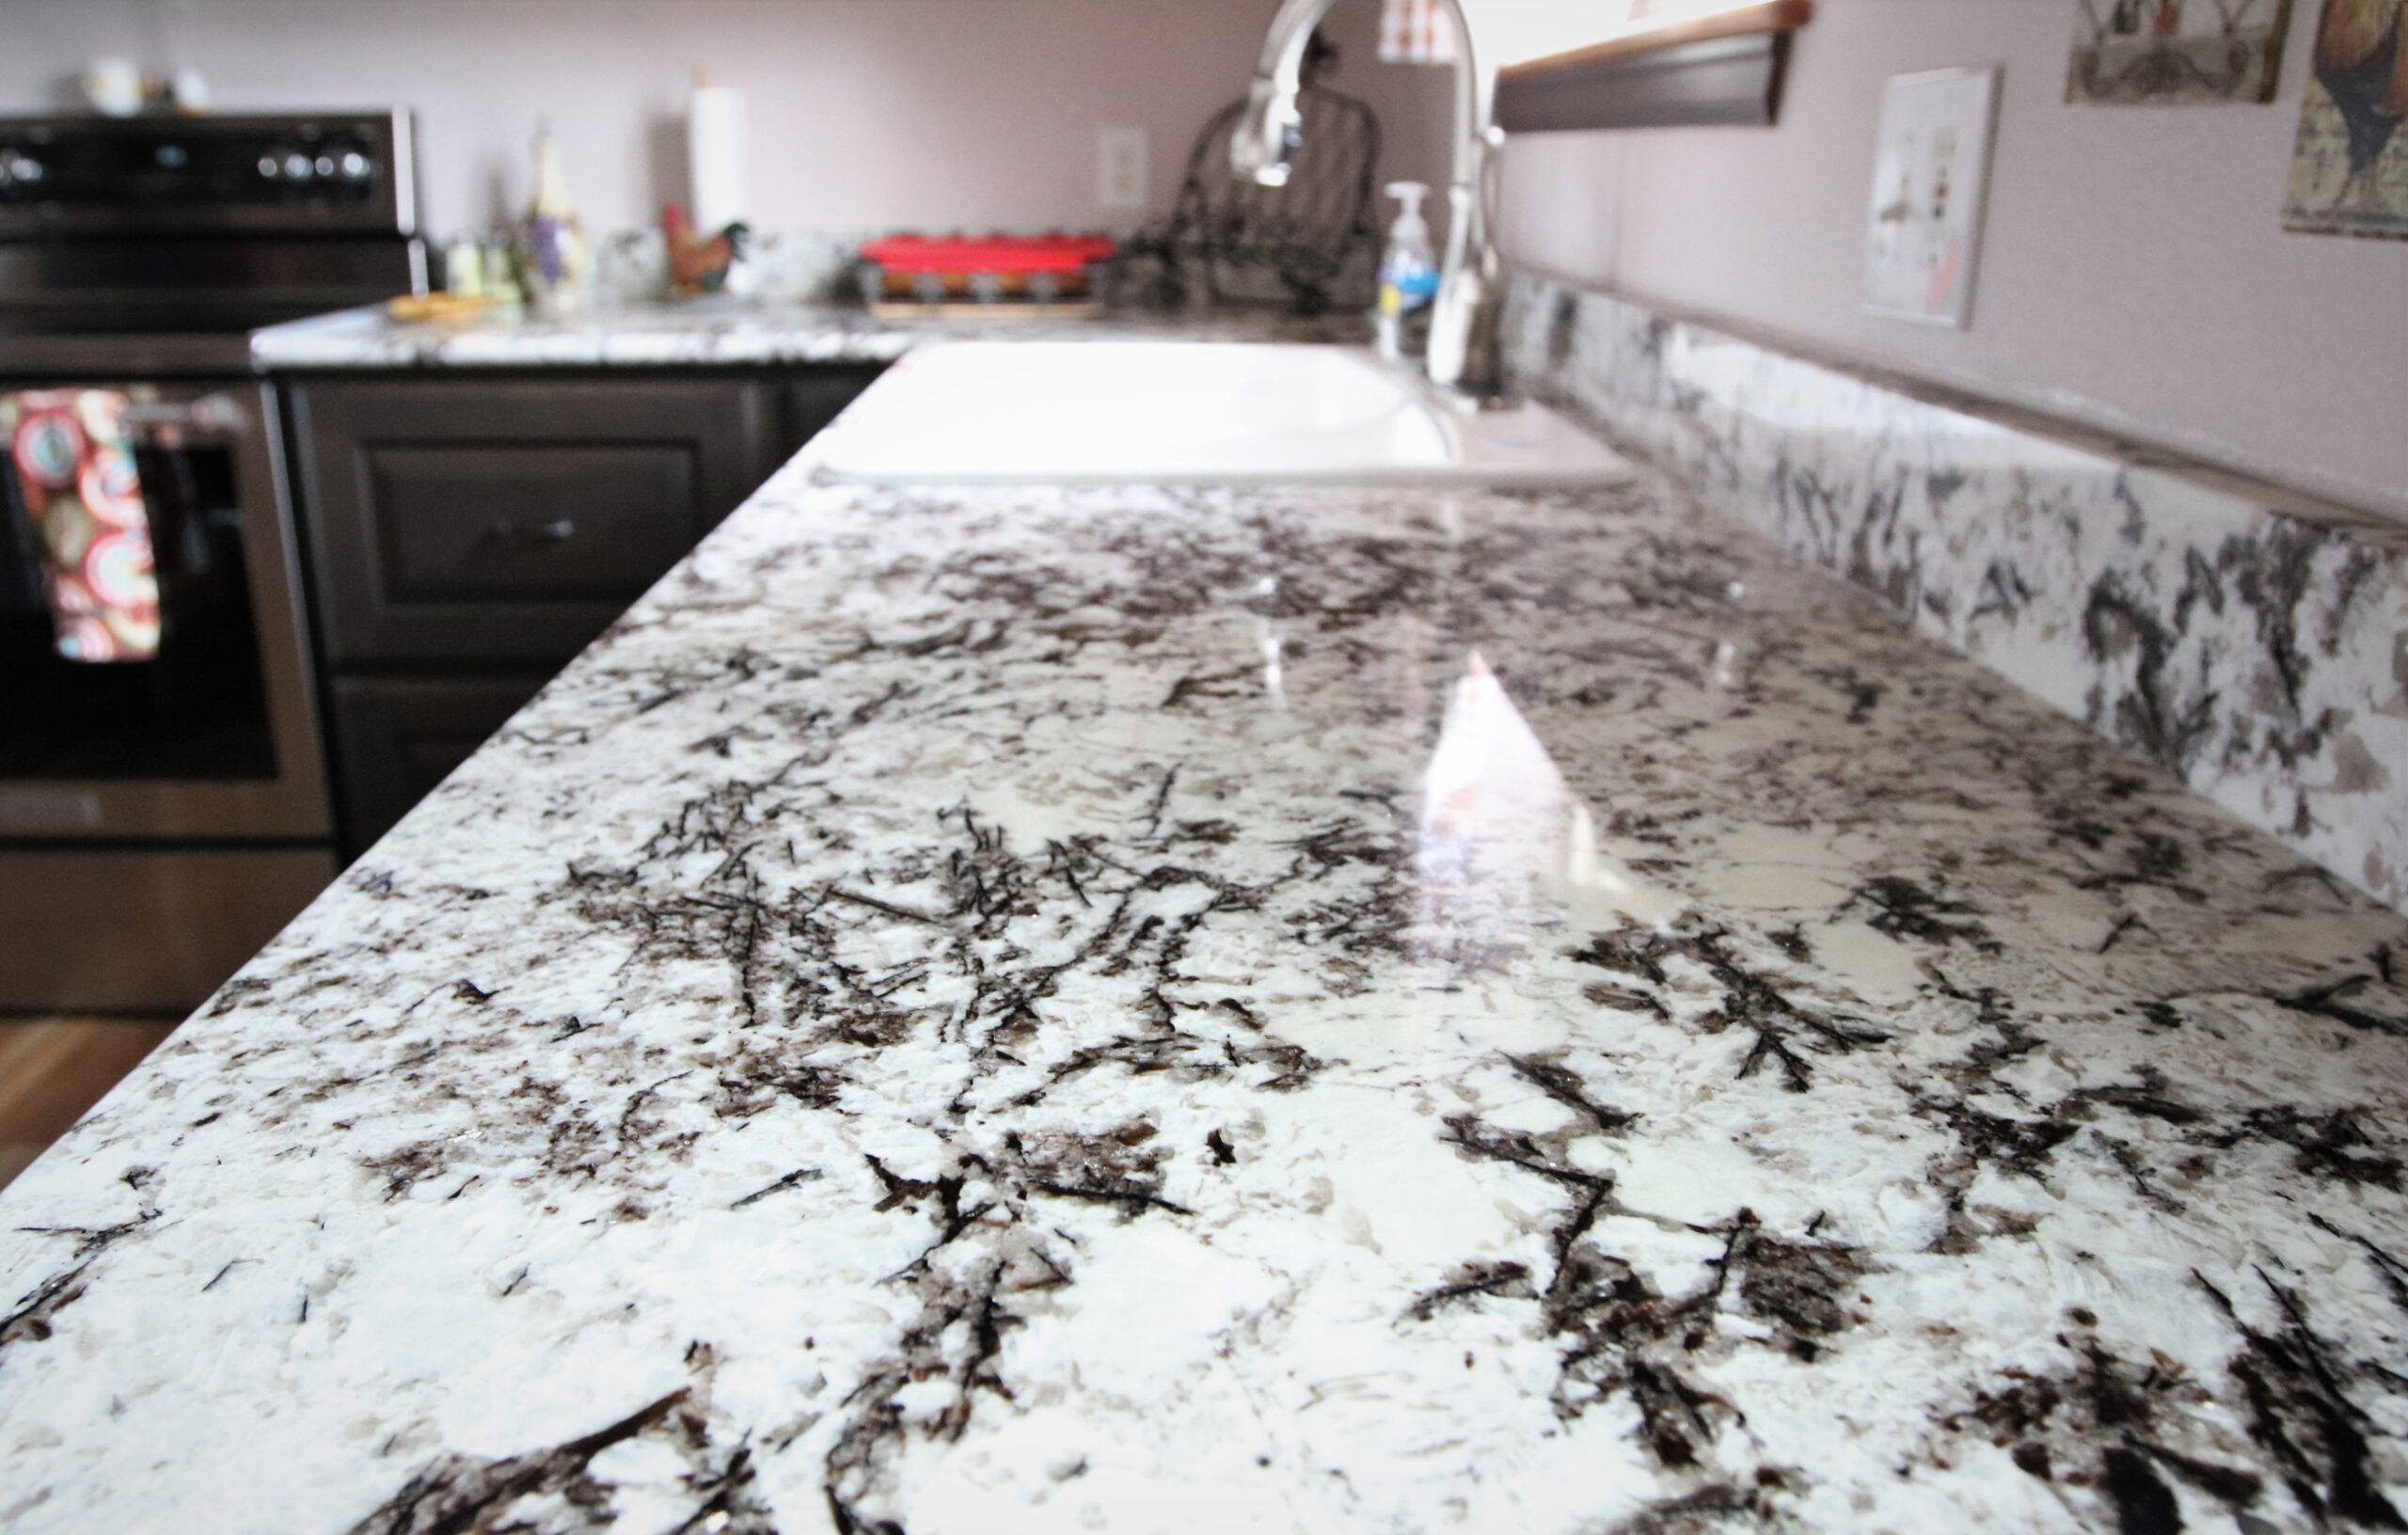 Persia Pearl Granite kitchen countertops Shop Granite Stone Countertops at French Creek Designs, Casper, WY